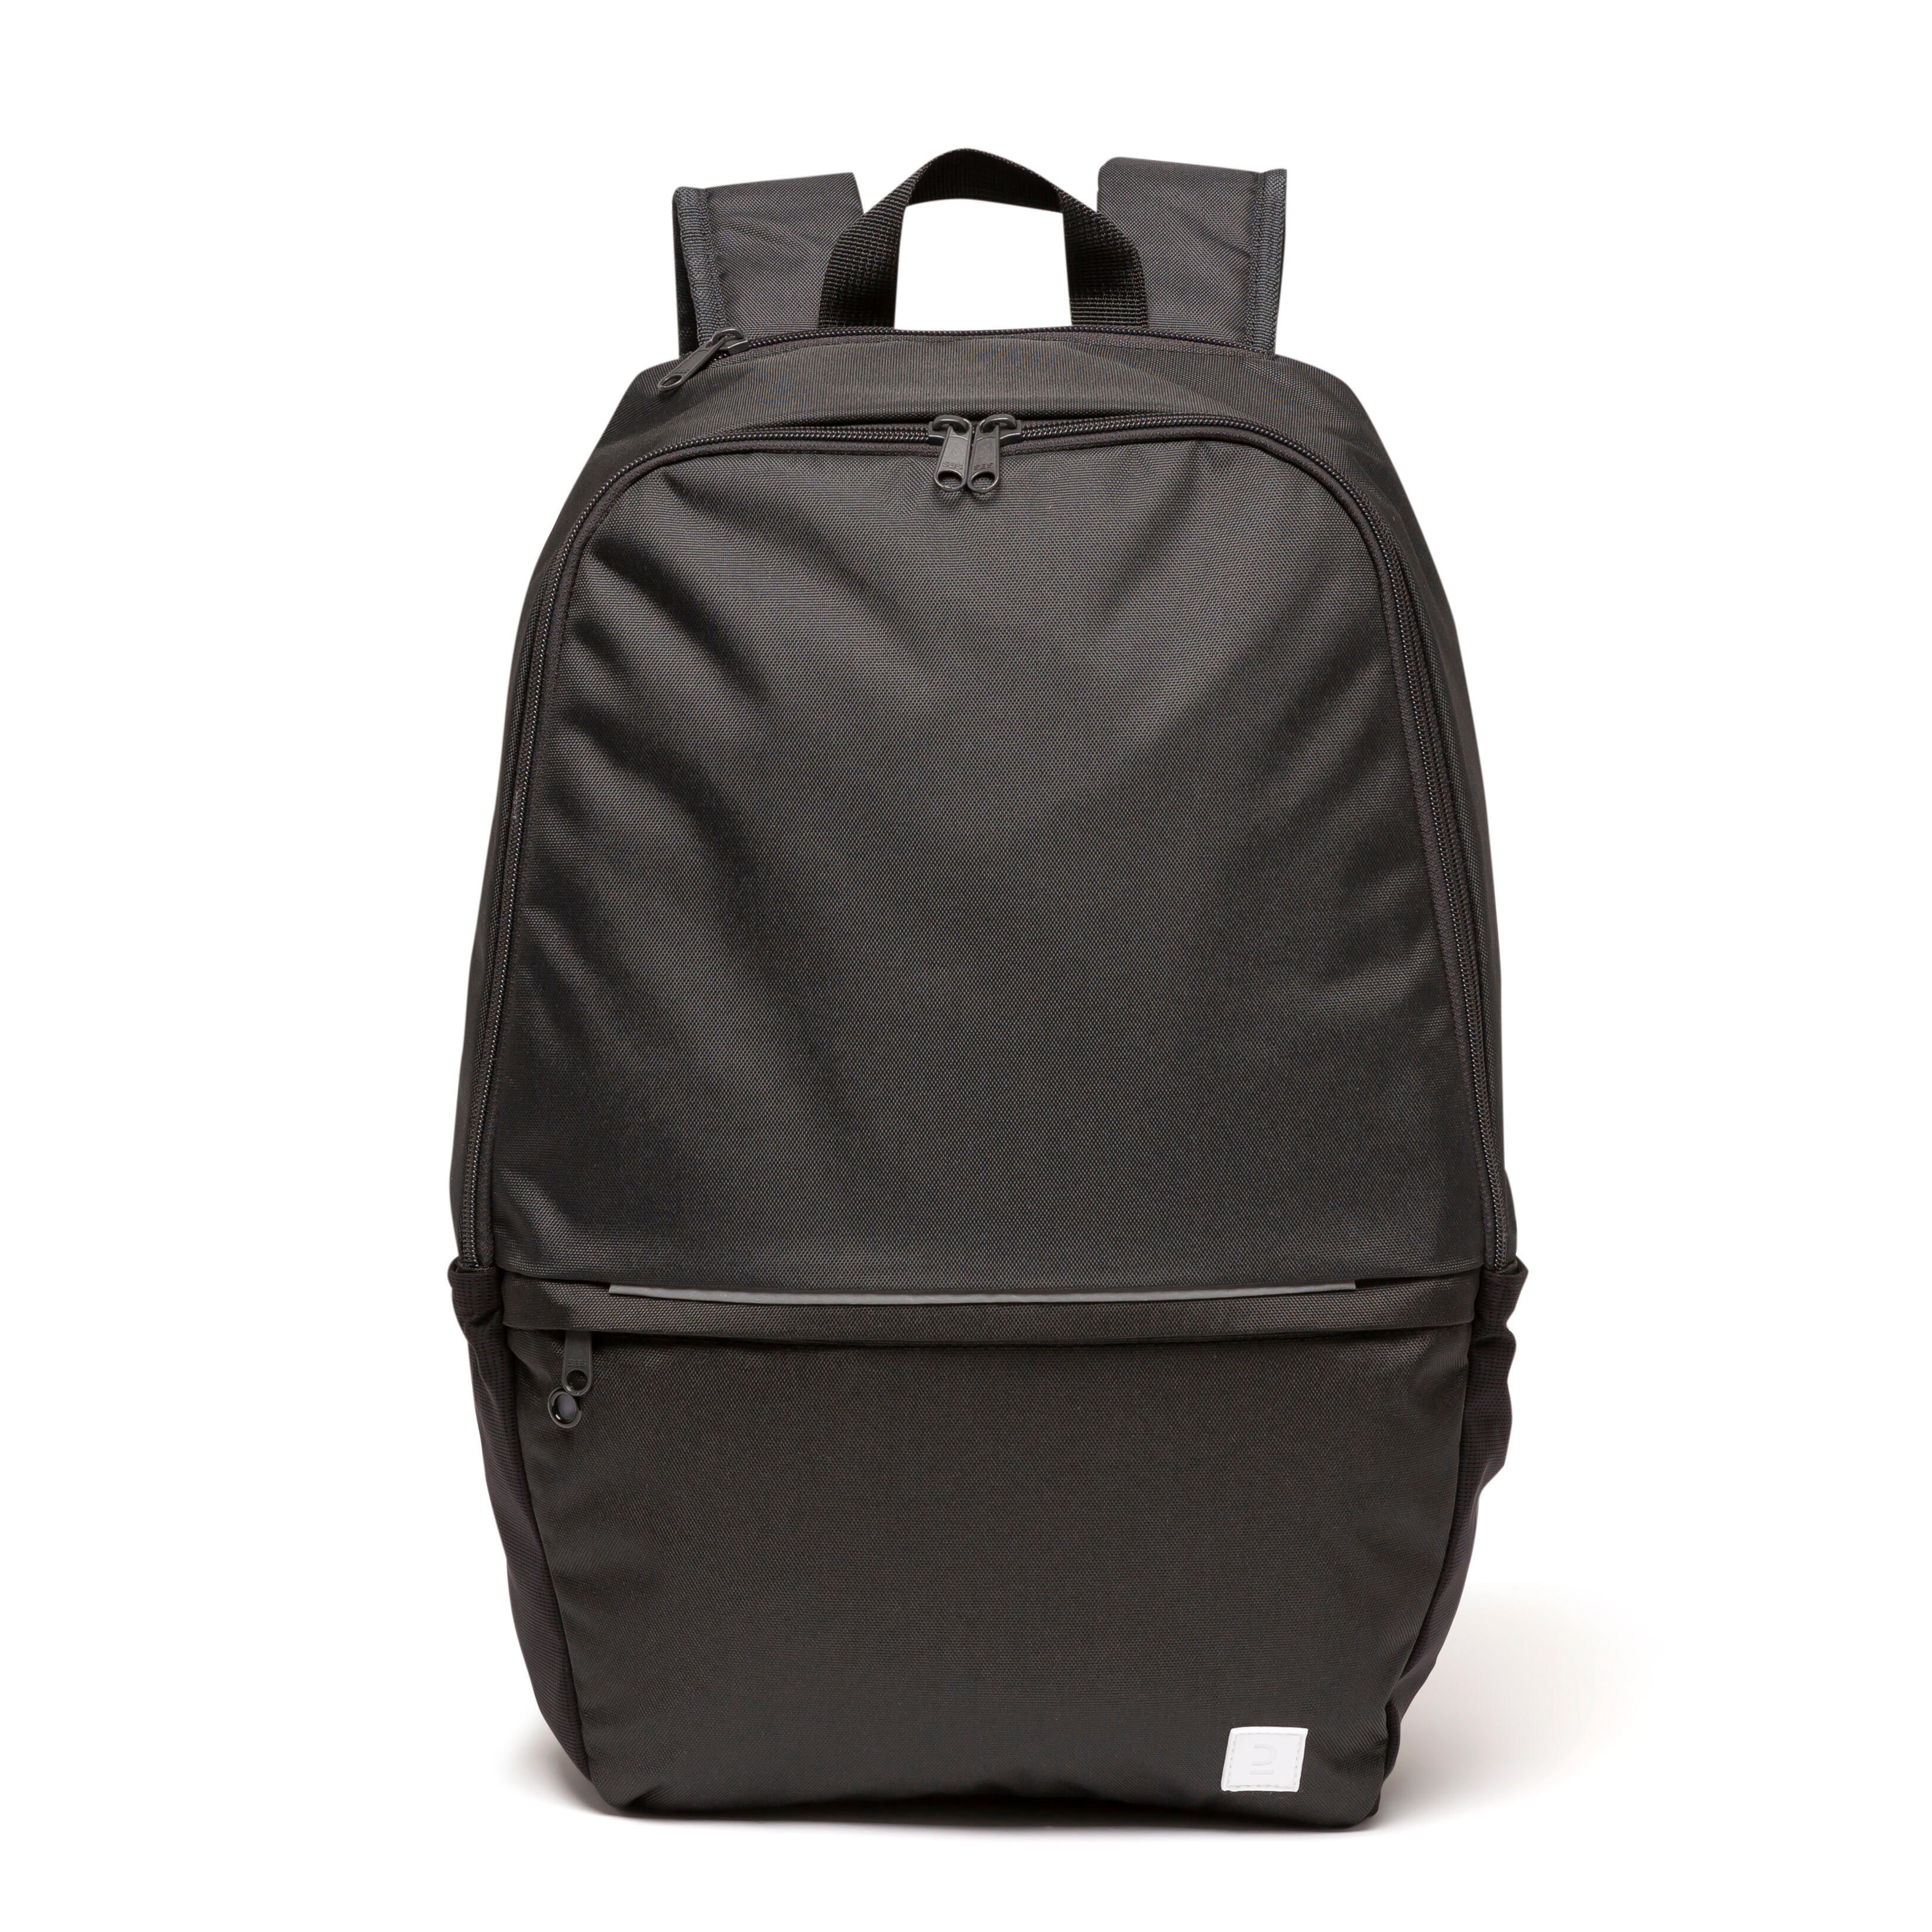 24L Sports Bag Backpack Essential - Black